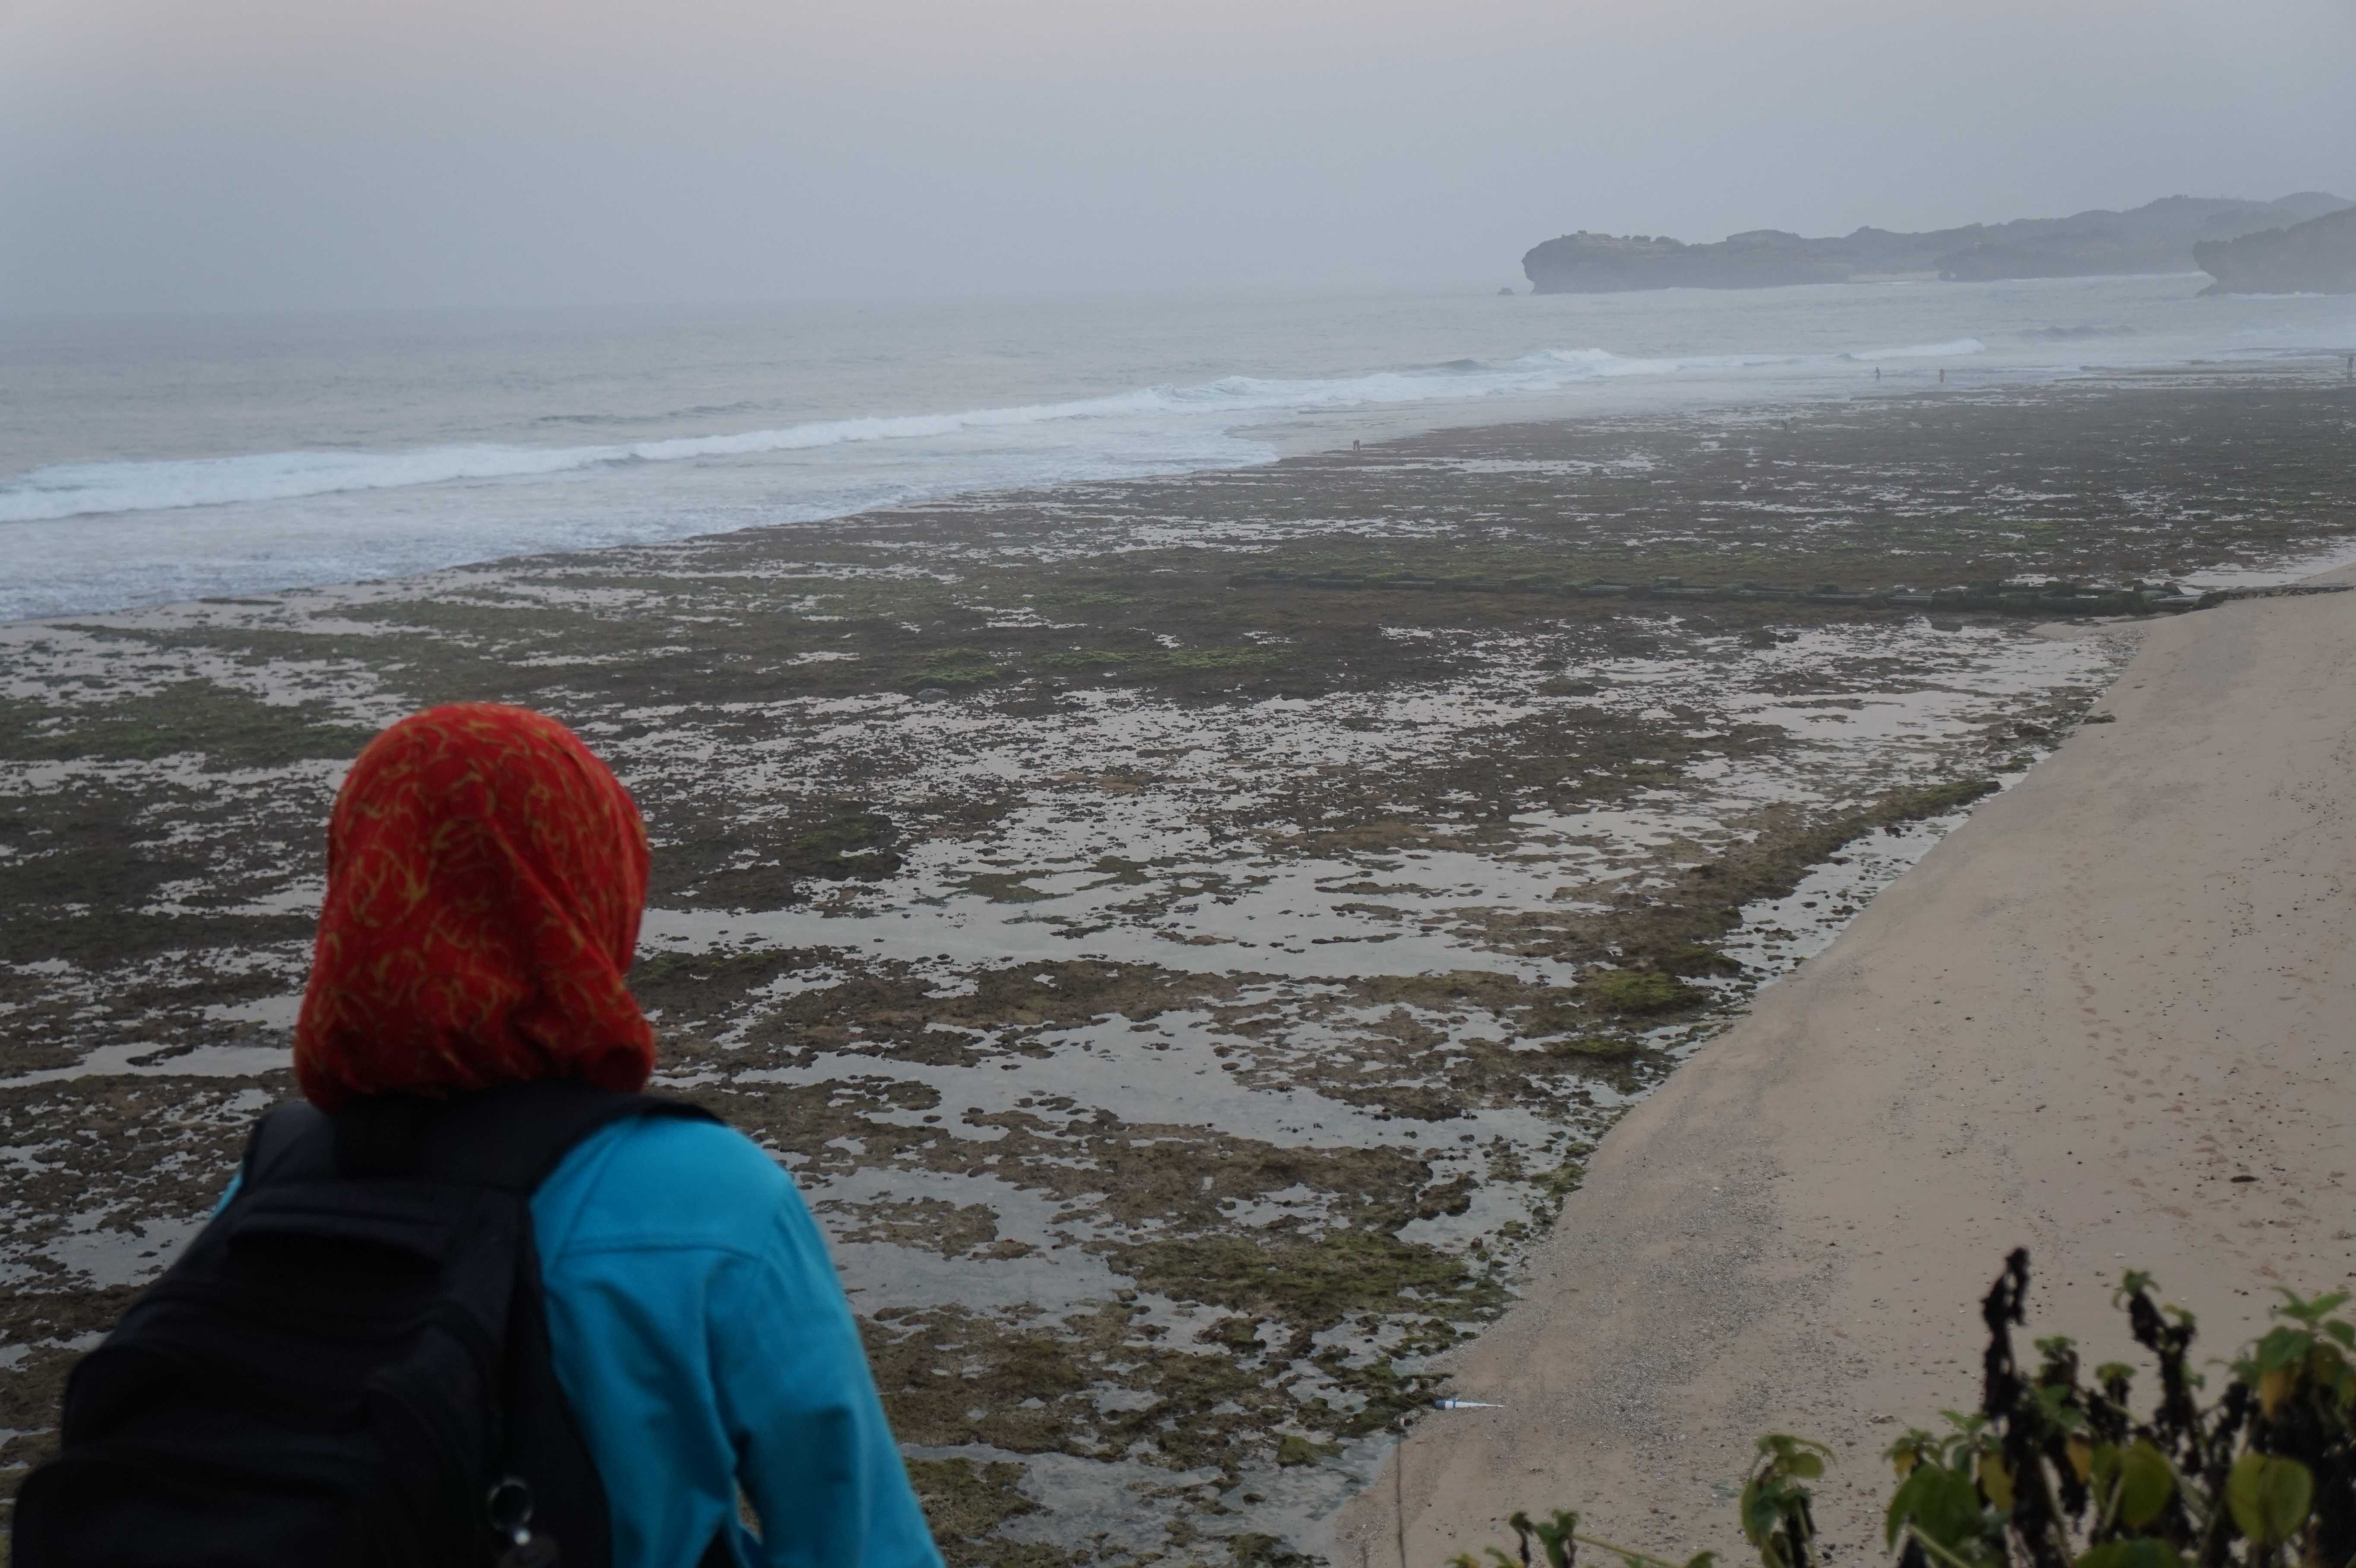 Pantai Indrayanti Gunungkidul, Yogyakarta (c) Alviani Suwoko/Travelingyuk